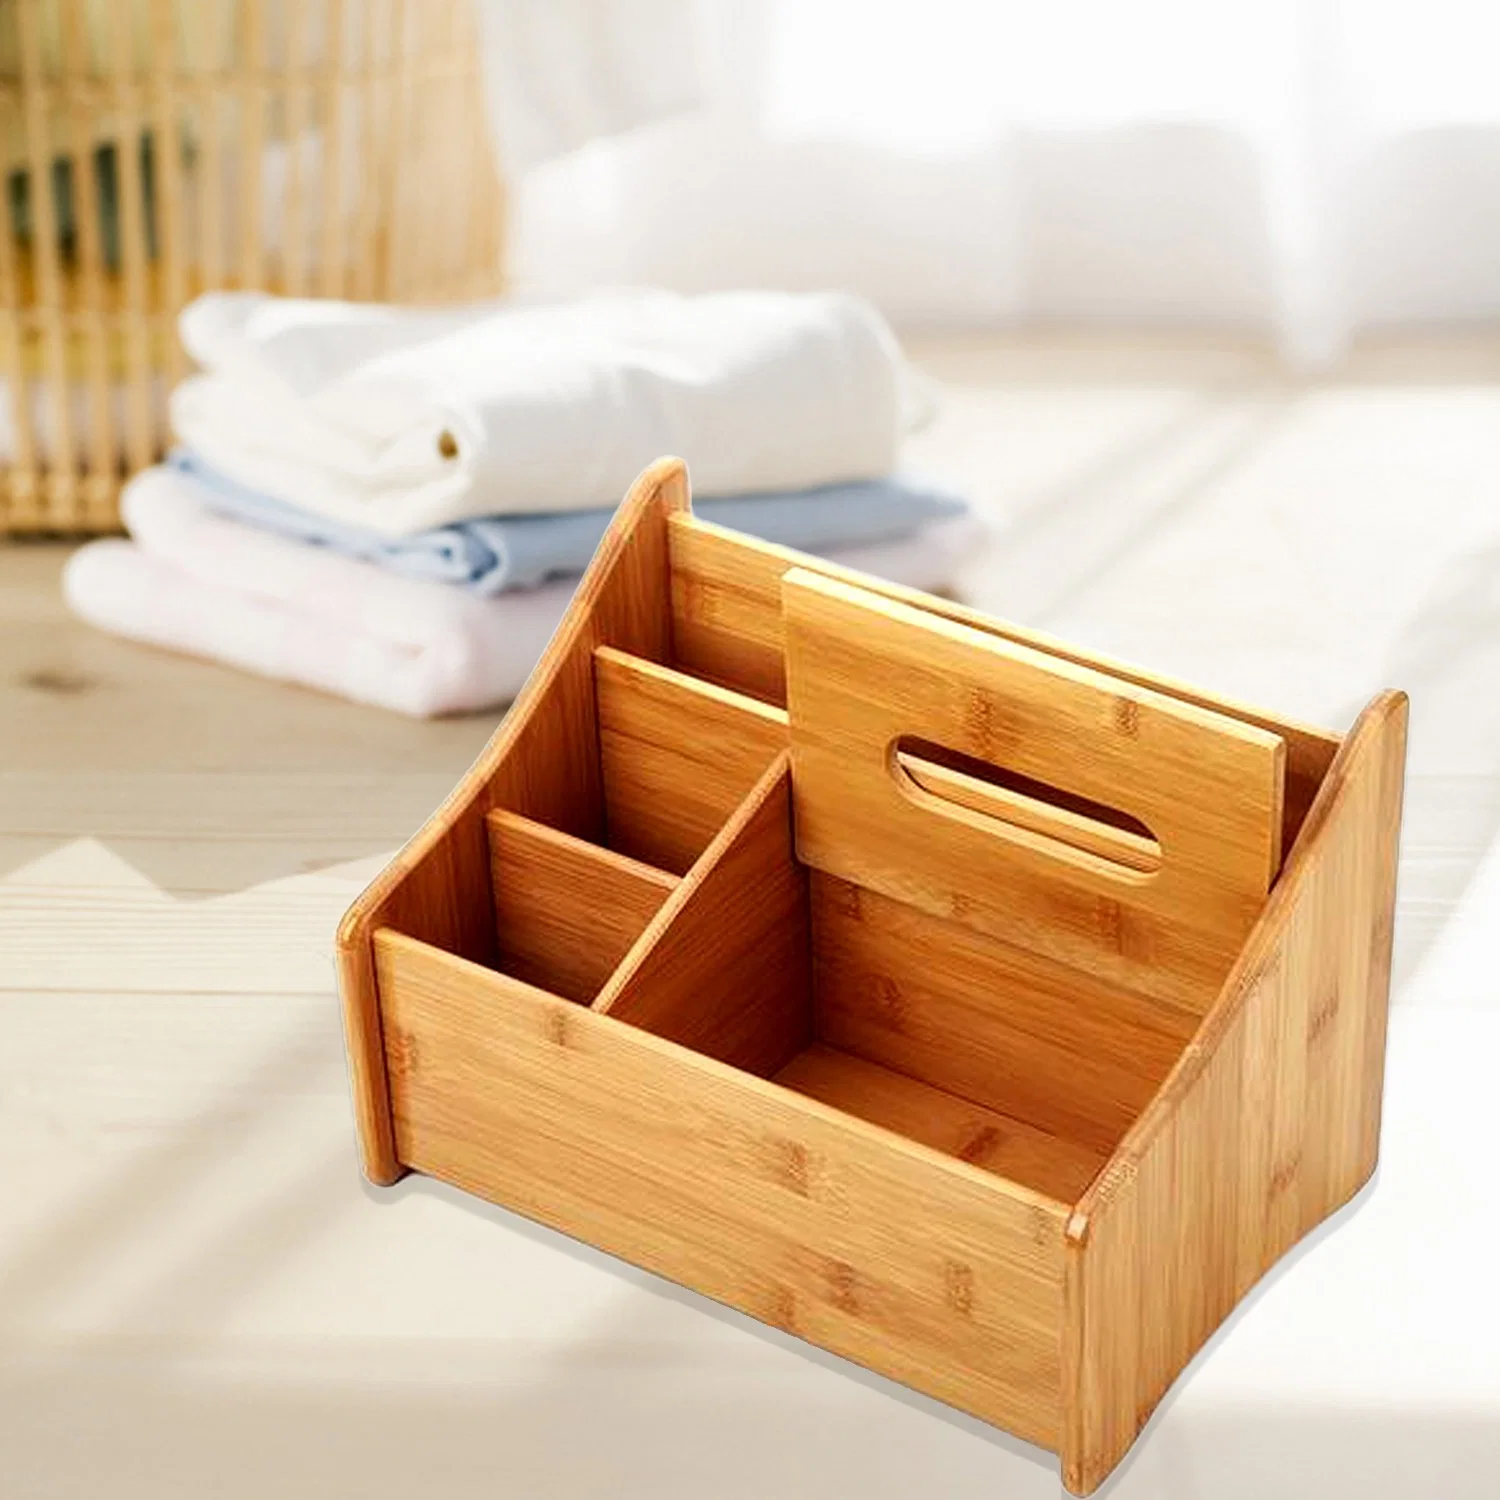 Caixa de tecidos Creative Bamboo multifuncional para escritório e casa Caixas de tecido de bambu